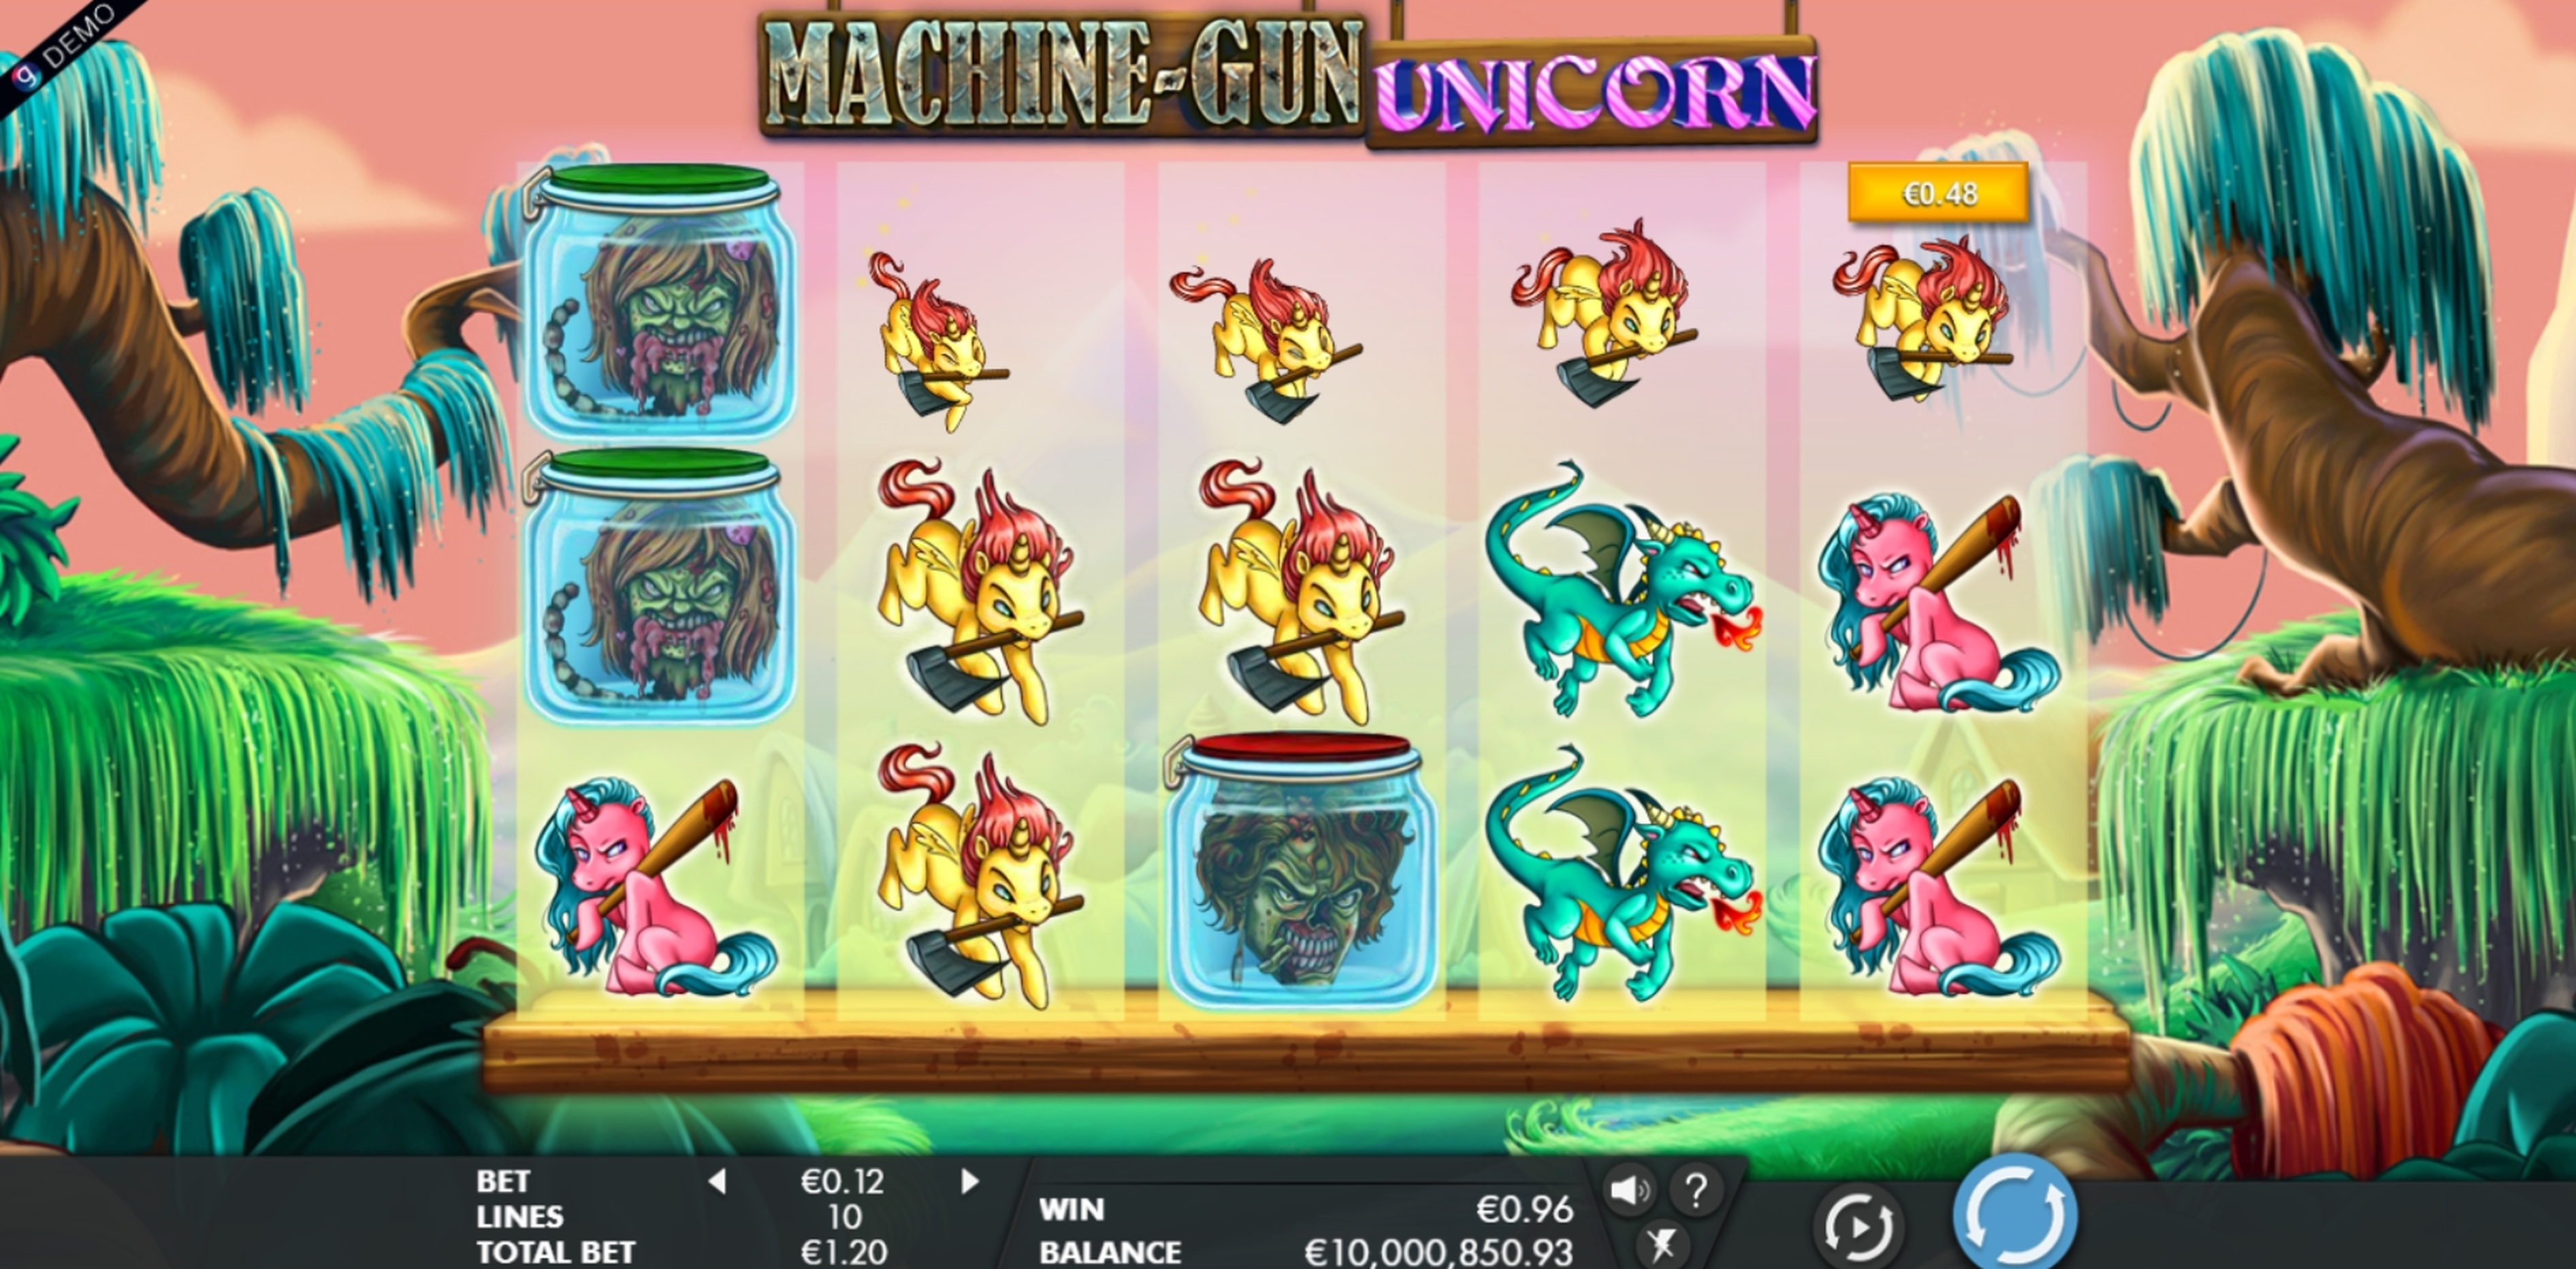 Win Money in Machine Gun Unicorn Free Slot Game by Genesis Gaming